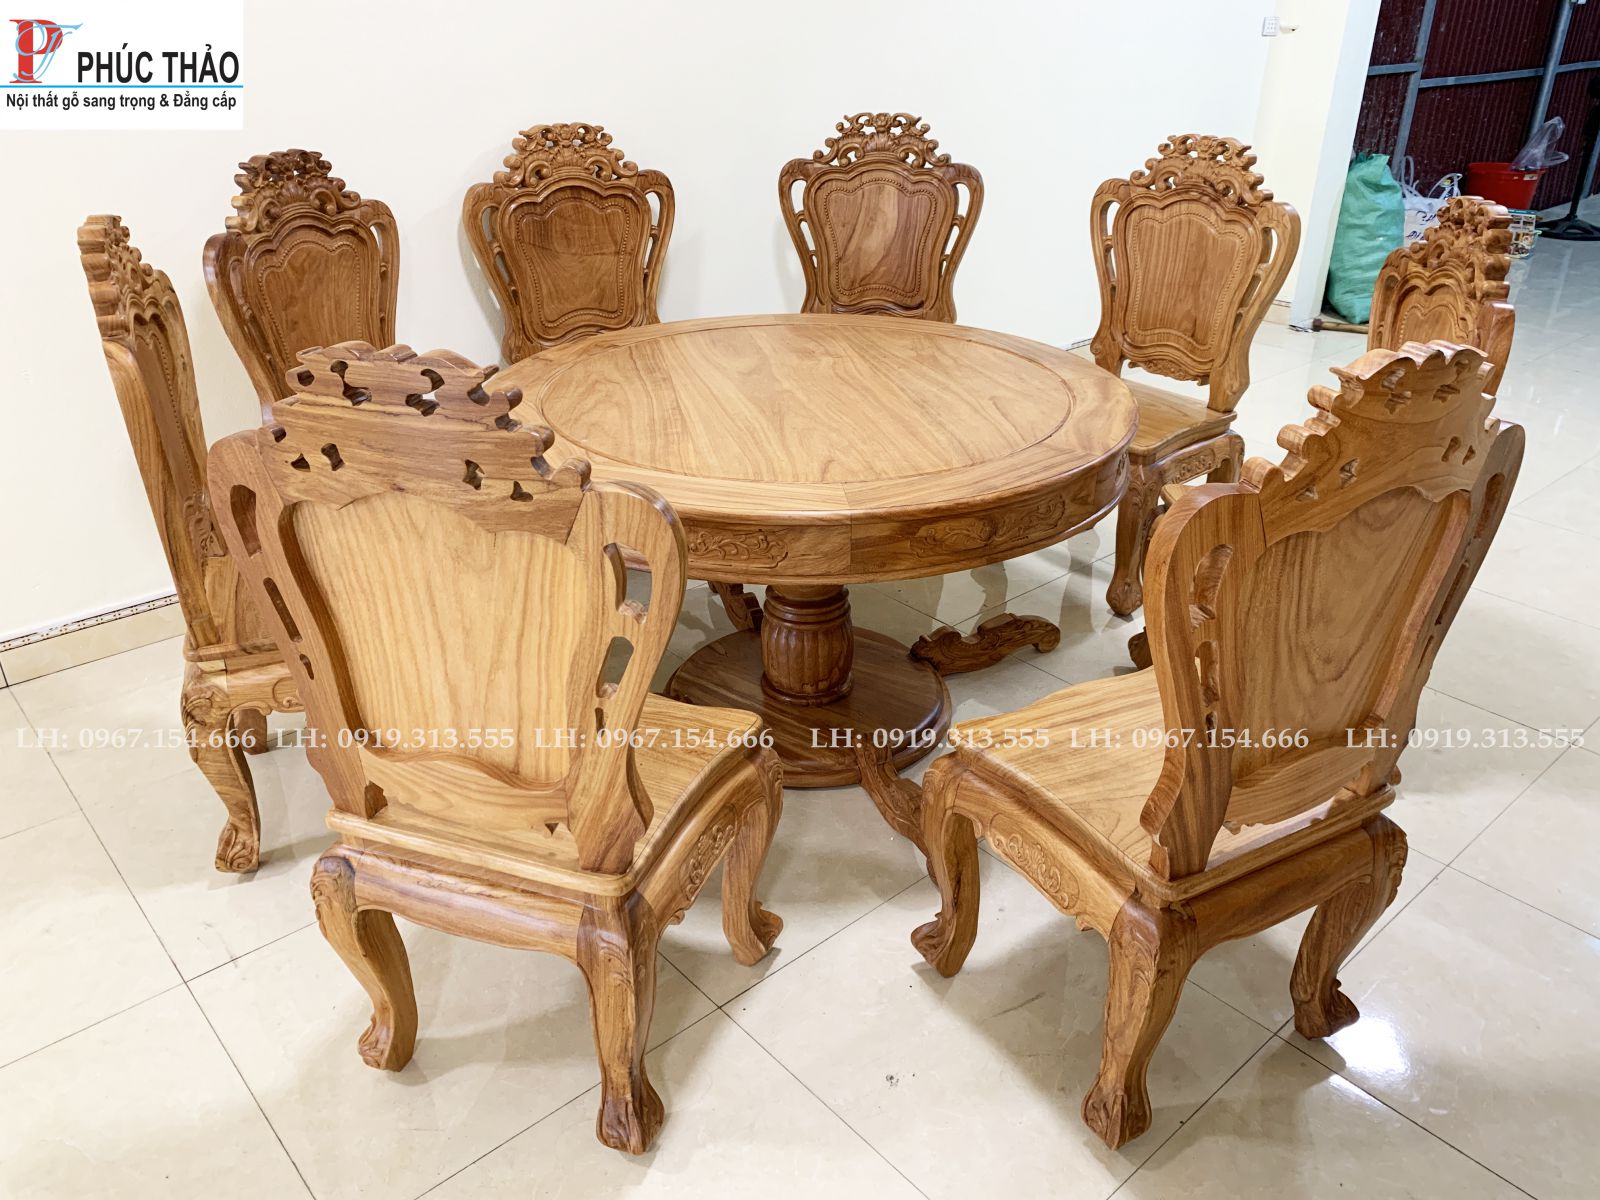 Top 10 mẫu bàn ghế ăn gỗ cao cấp đẹp chất lượng nhất hiện nay. -